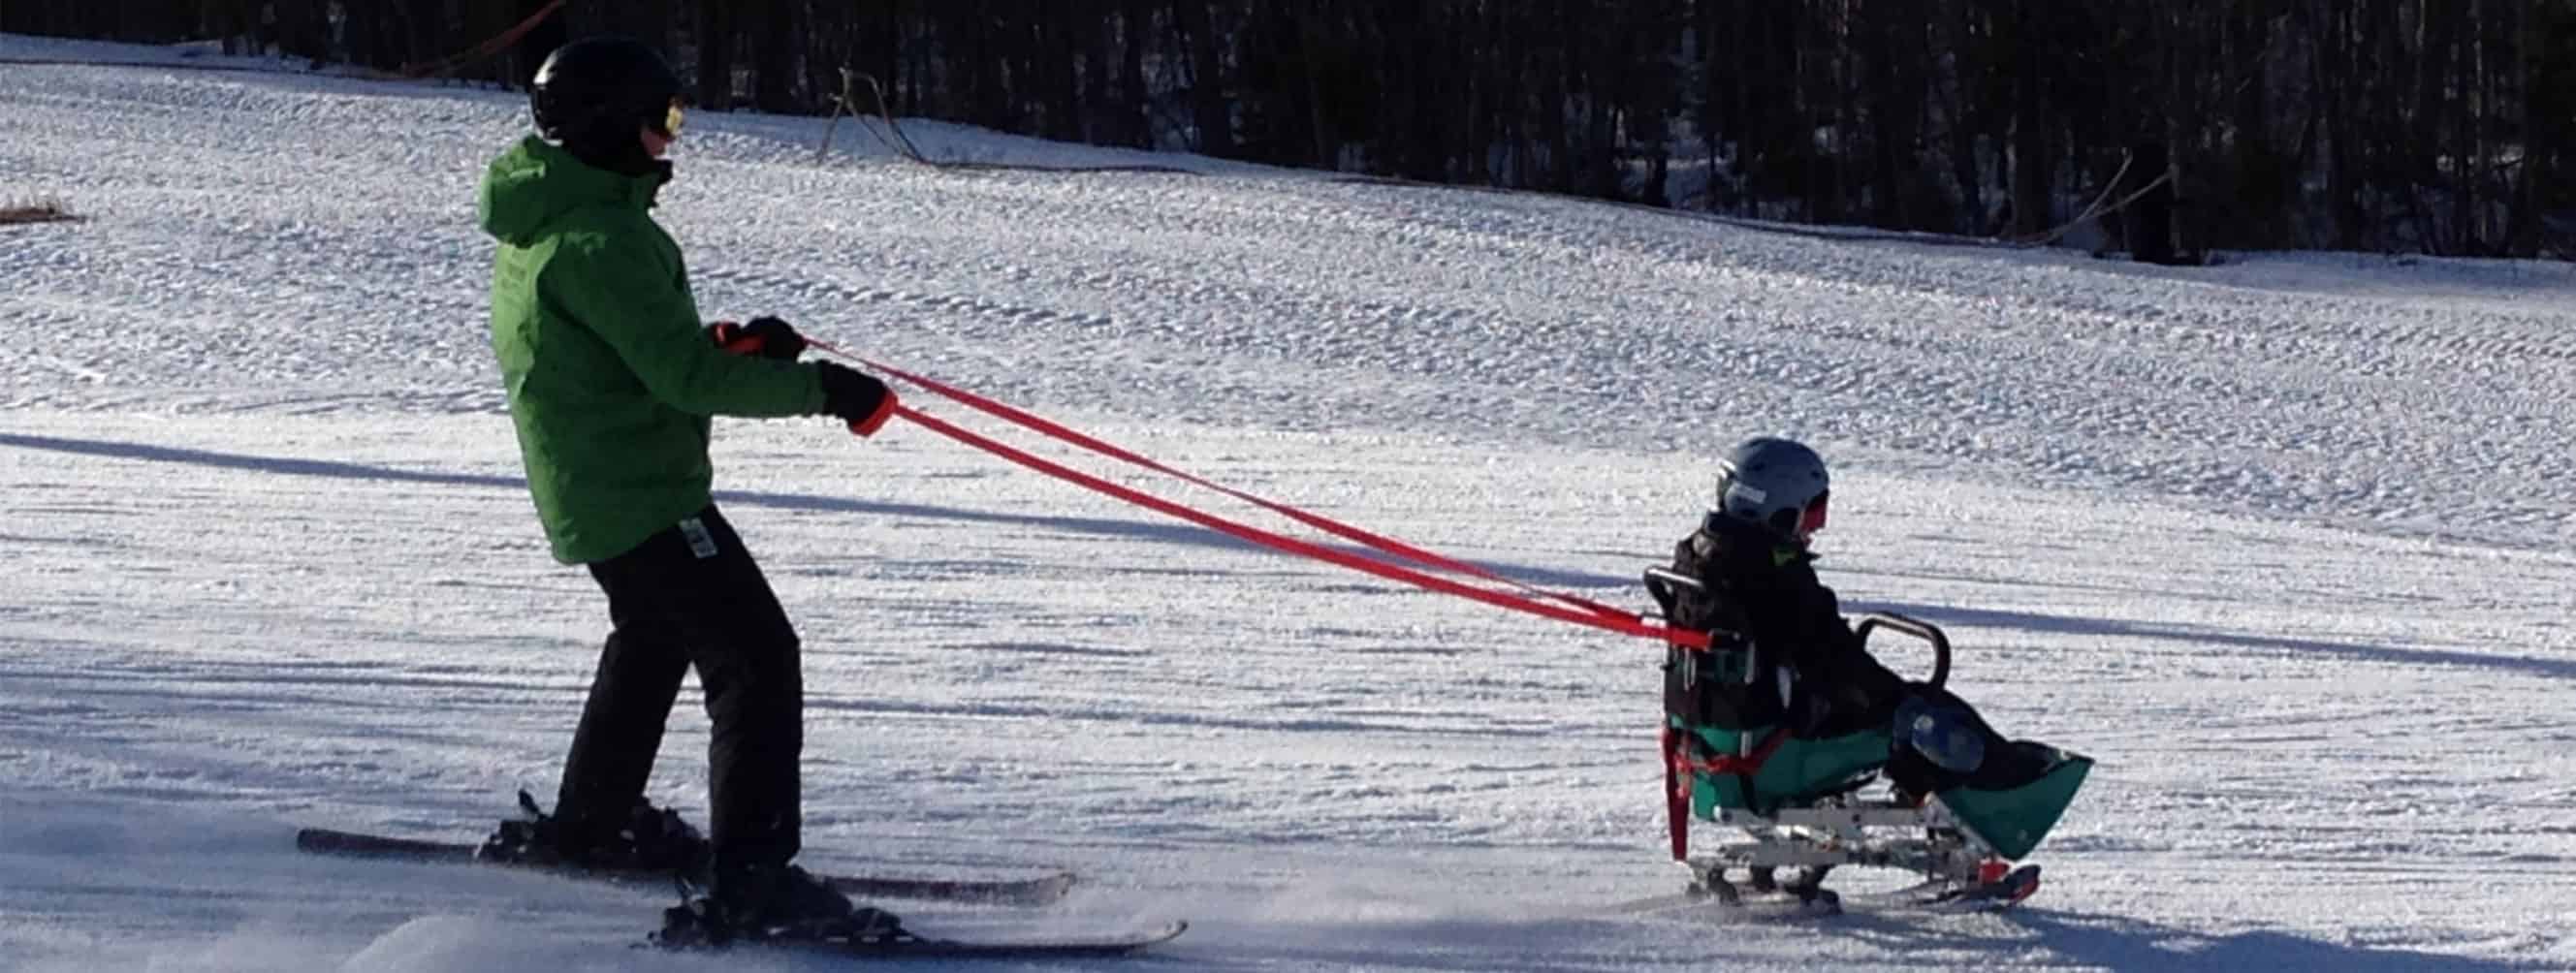 vrouwelijk Philadelphia Kan weerstaan Snow Sports - Vermont Adaptive Ski & Sports